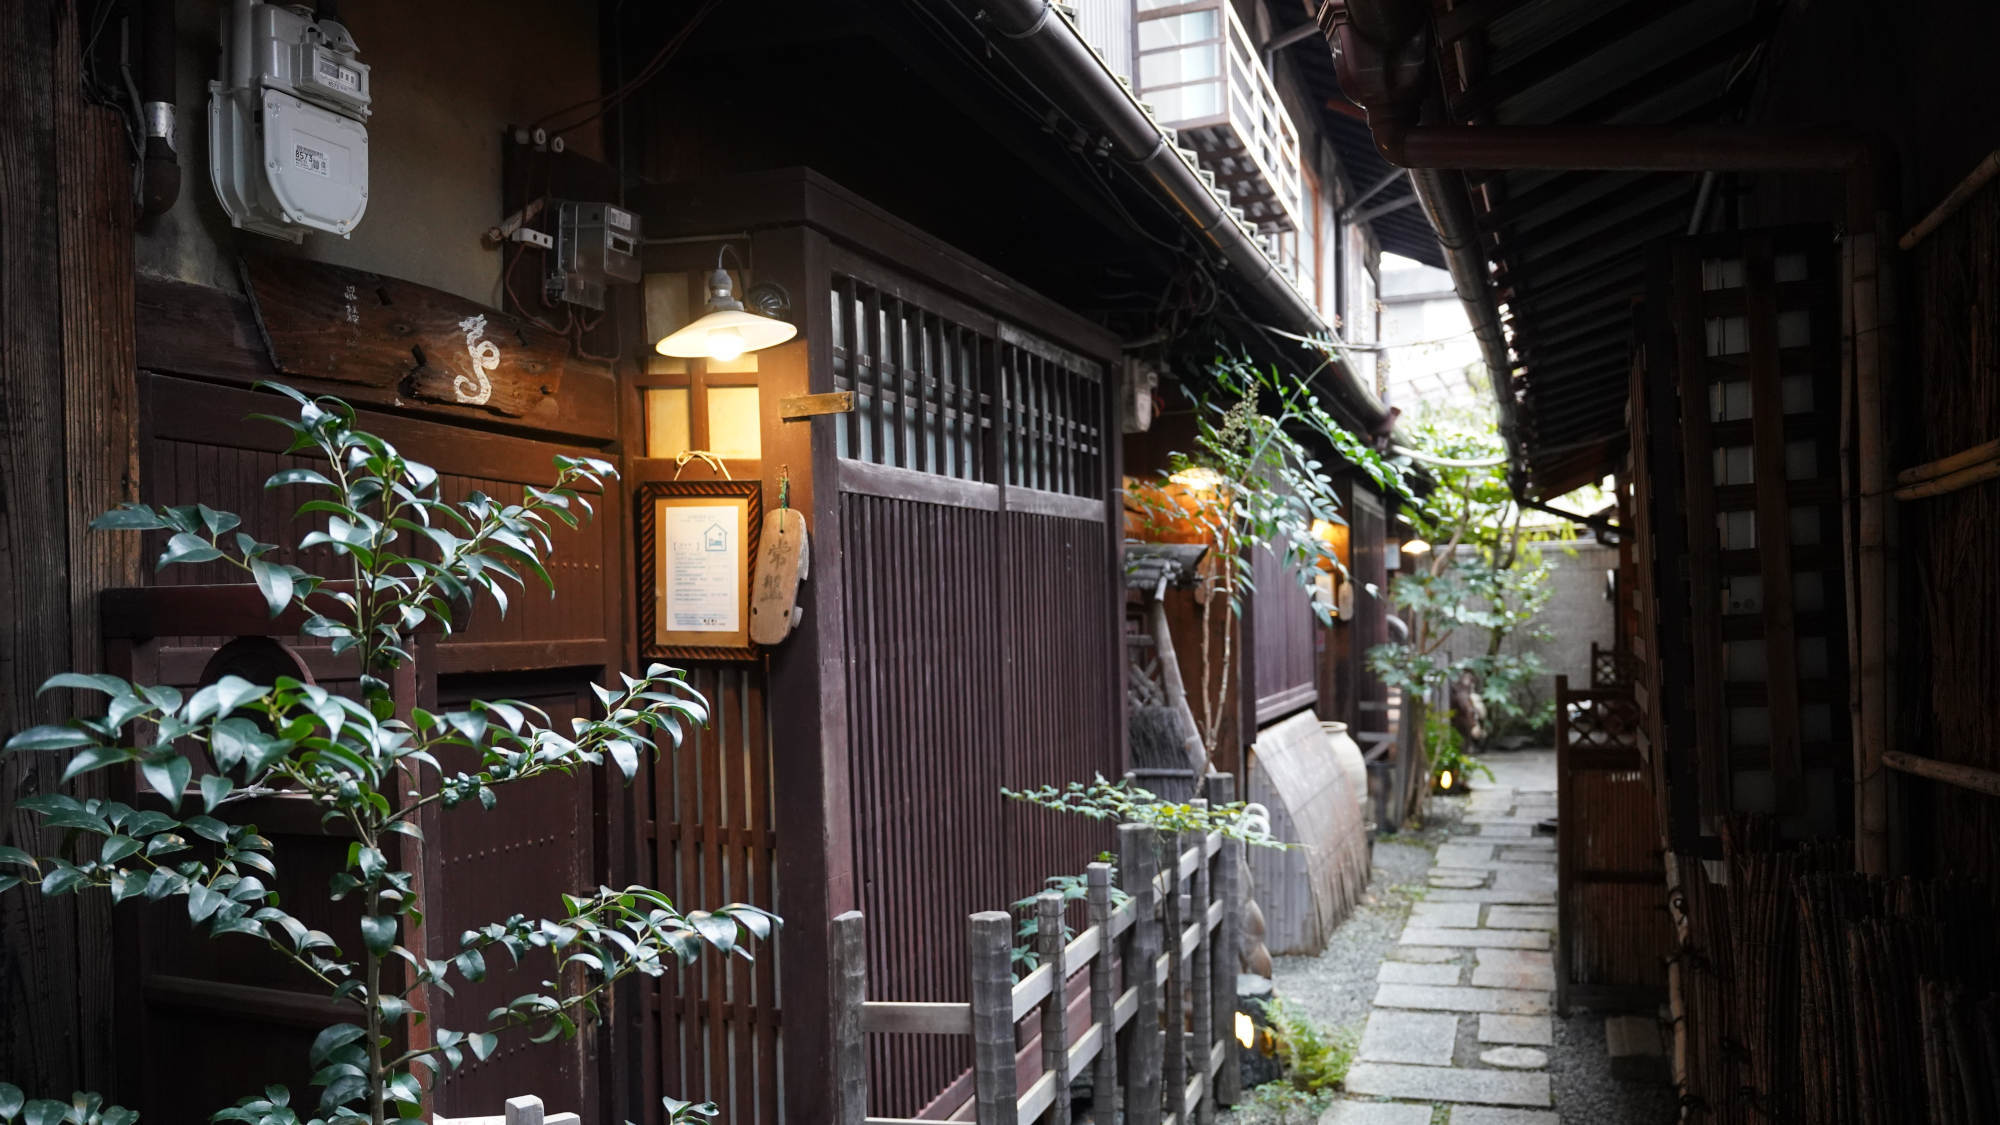 ・【外観】昔の日本人の暮らしの雰囲気を感じられます。どこか懐かしい情緒に溢れた町家です